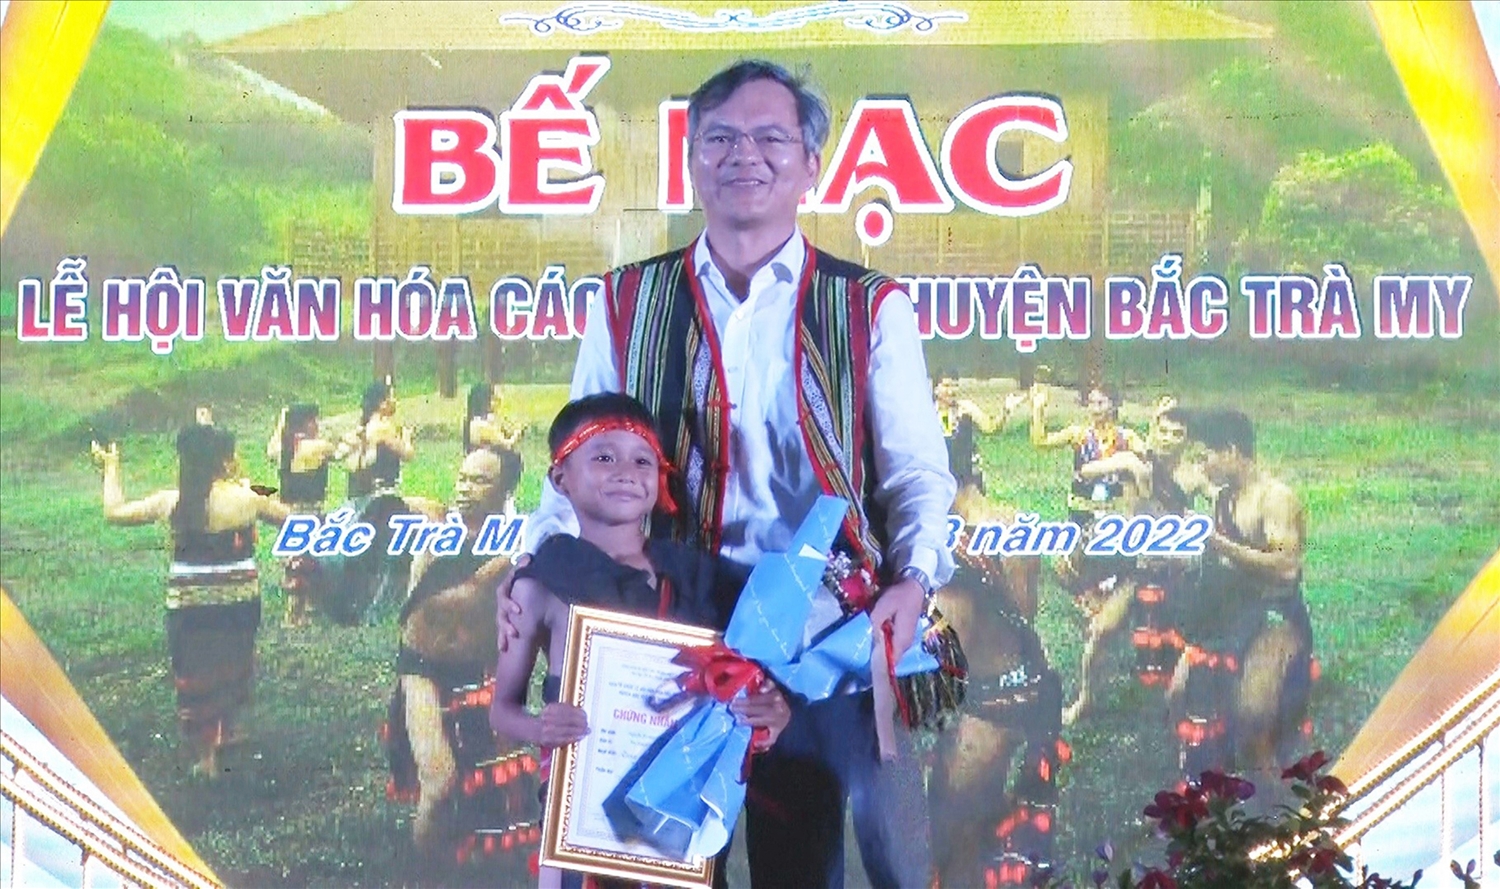 Nguyễn Trường Ka đạt giải ấn tượng cồng chiêng do Ban Tổ chức trao tặng trong Lễ hội văn hóa các dân tộc huyện Bắc Trà My tháng 8/2022. Ảnh: Trà My